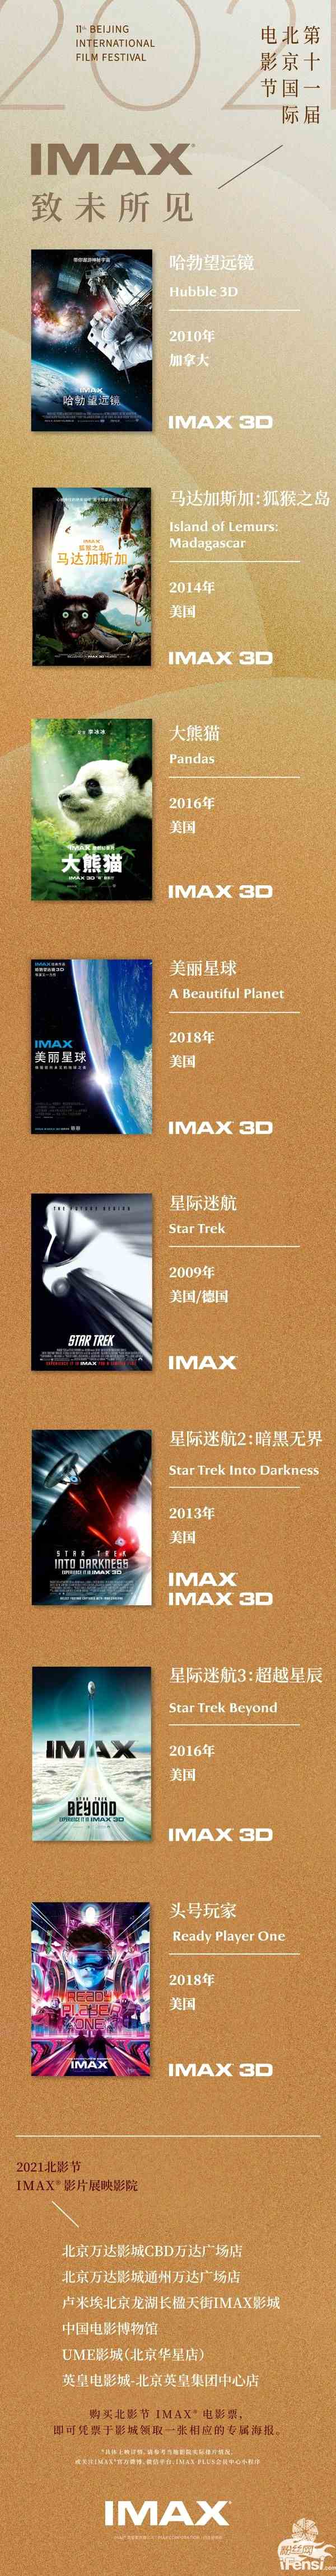 第11届北京国际电影节IMAX展映片单公布